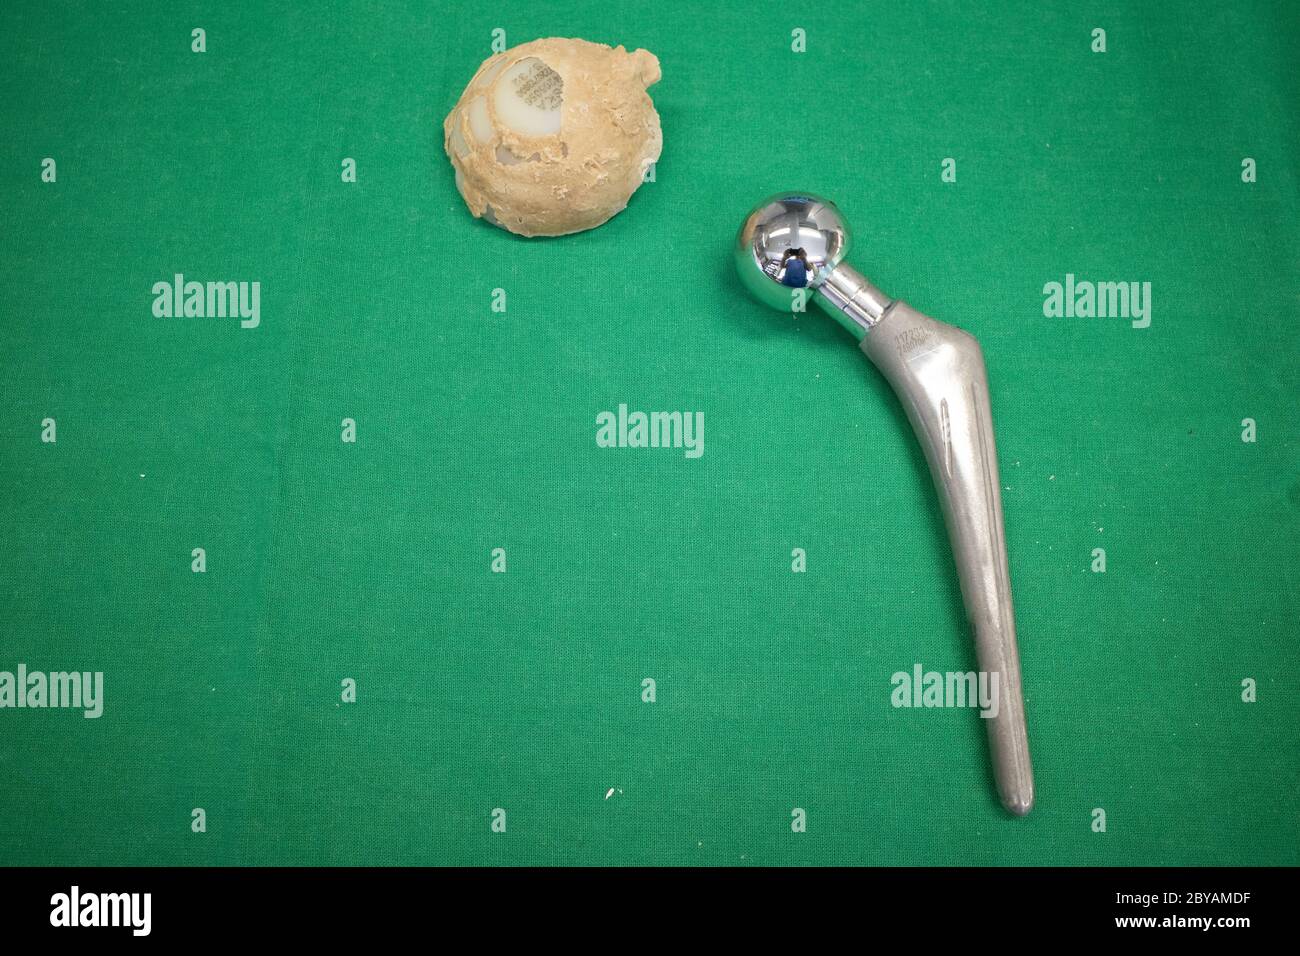 una protesi espiantata dell'anca è stata pulita e giace su un telo chirurgico verde Foto Stock